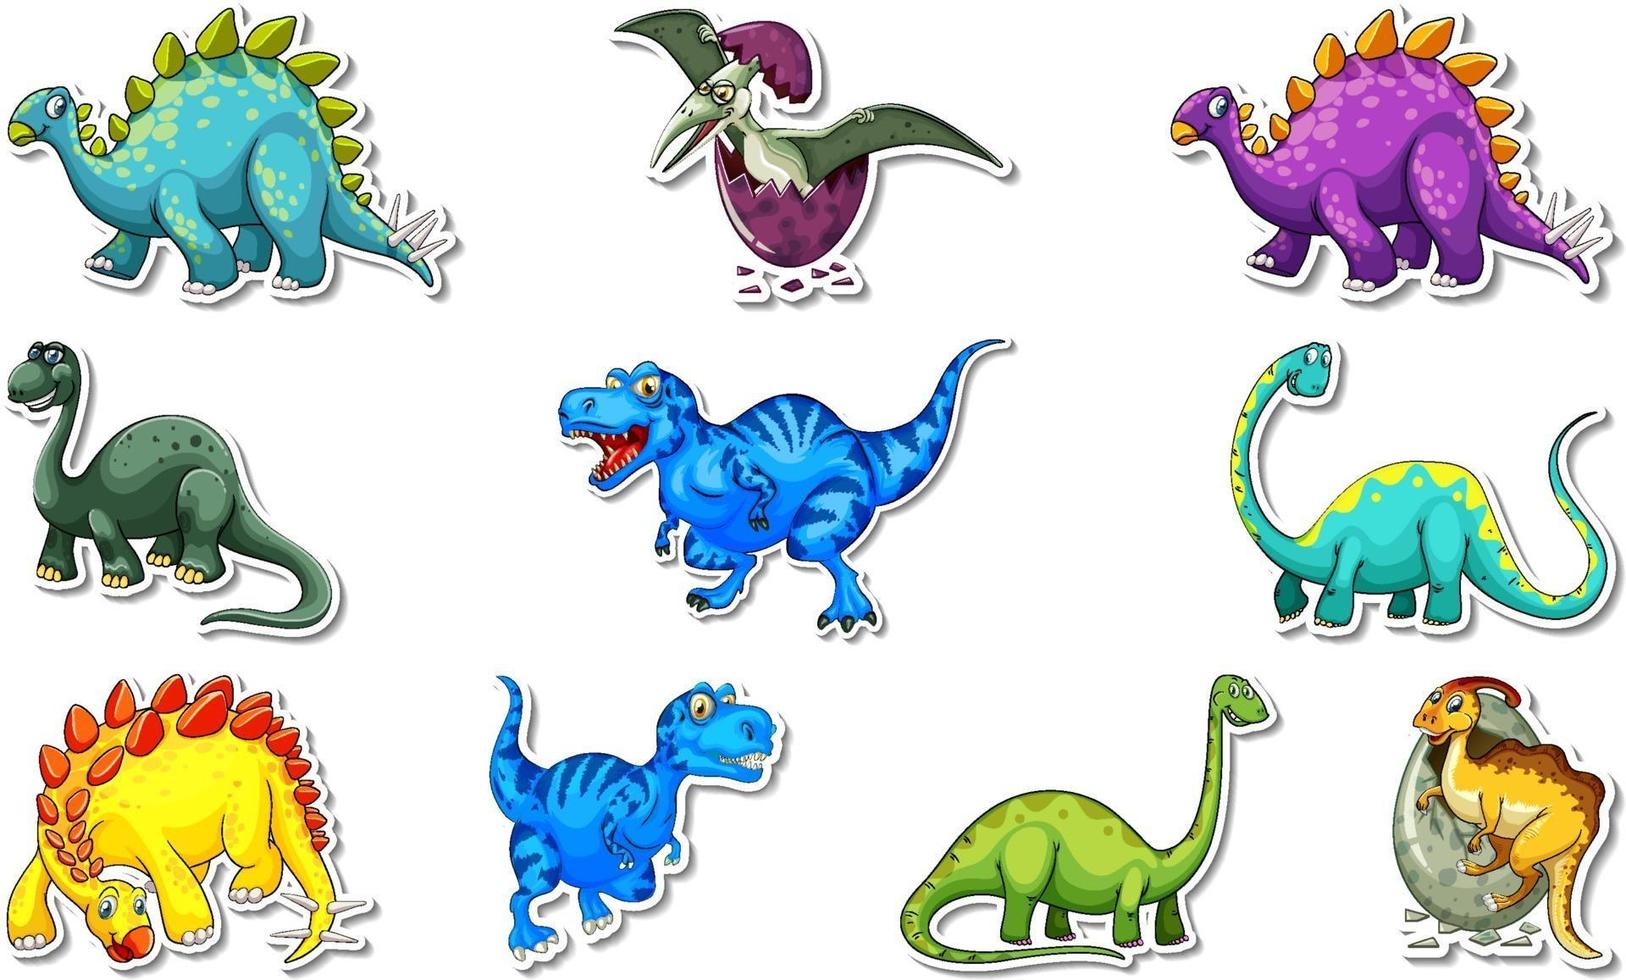 Aufkleberset mit verschiedenen Arten von Dinosaurier-Zeichentrickfiguren vektor